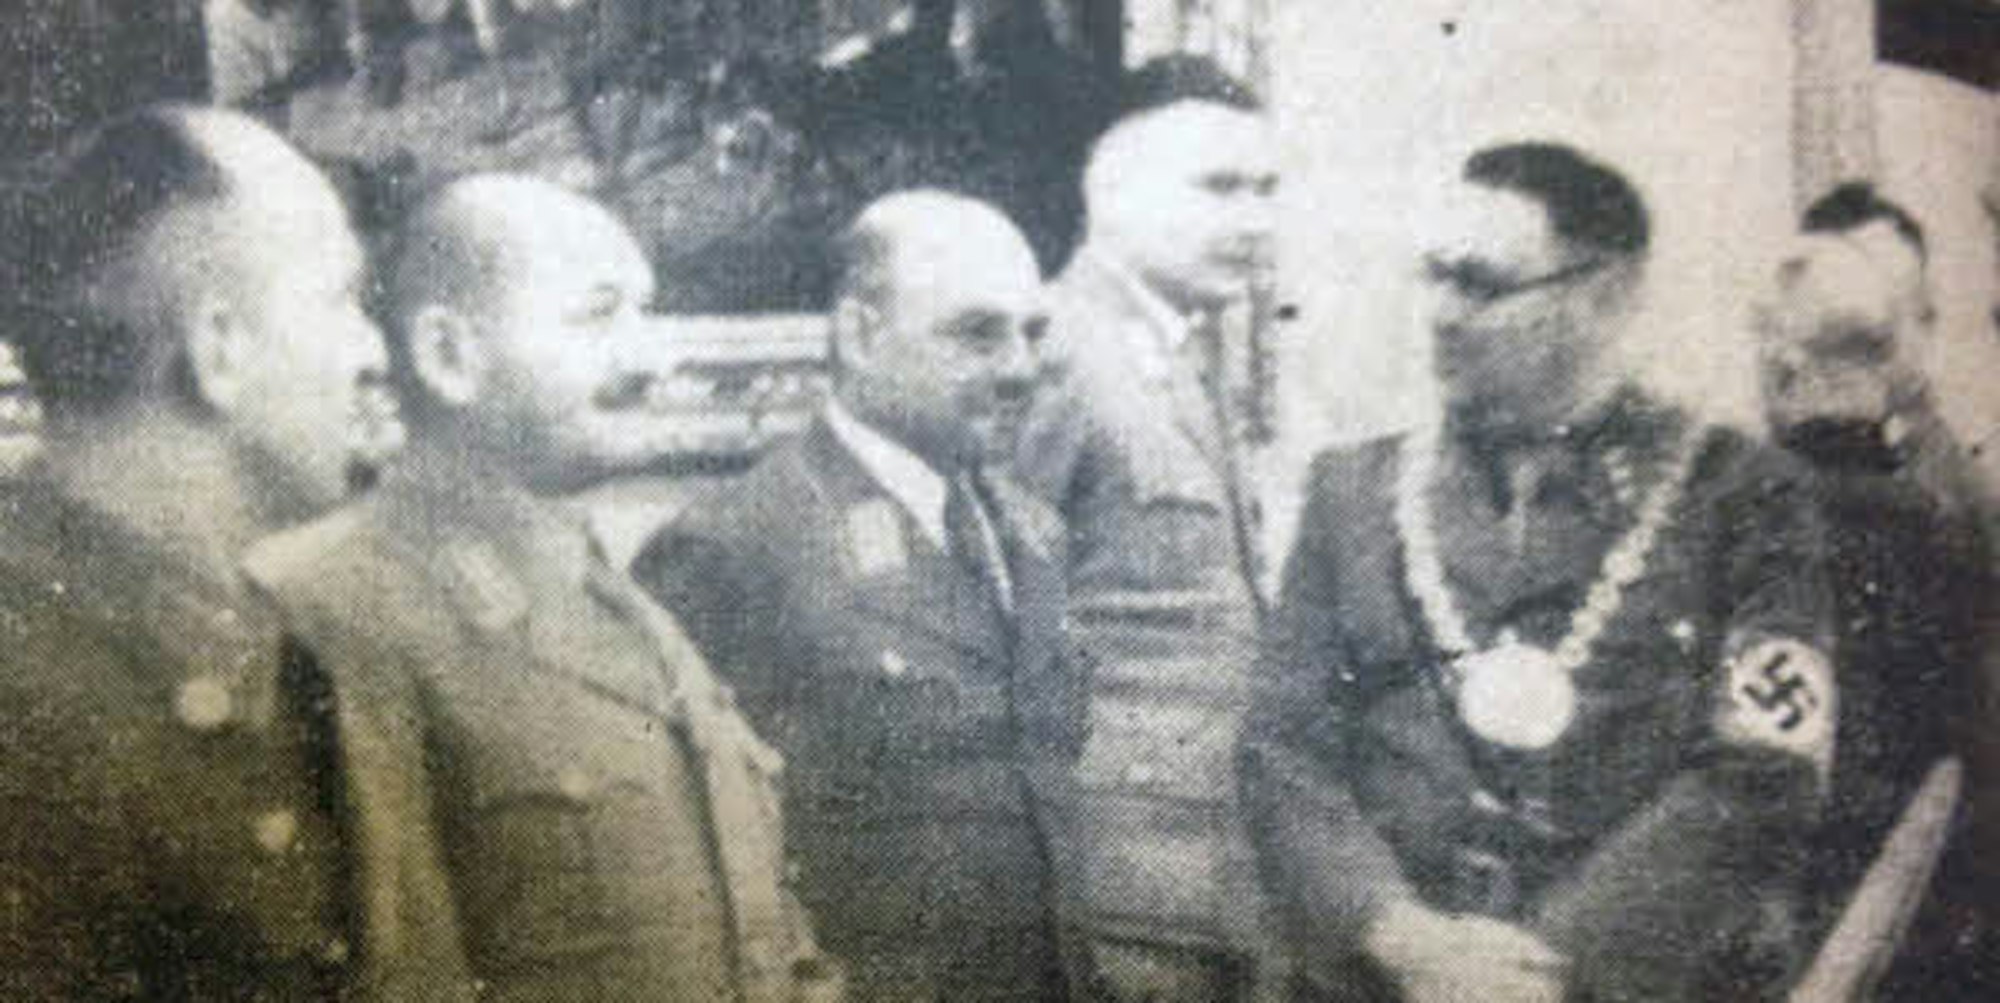 Otto Grimm (rechts) mit Hakenkreuzbinde und Amtskette als Bürgermeister von Altenburg im Kreise uniformierter Amtsträger der NS-Zeit.